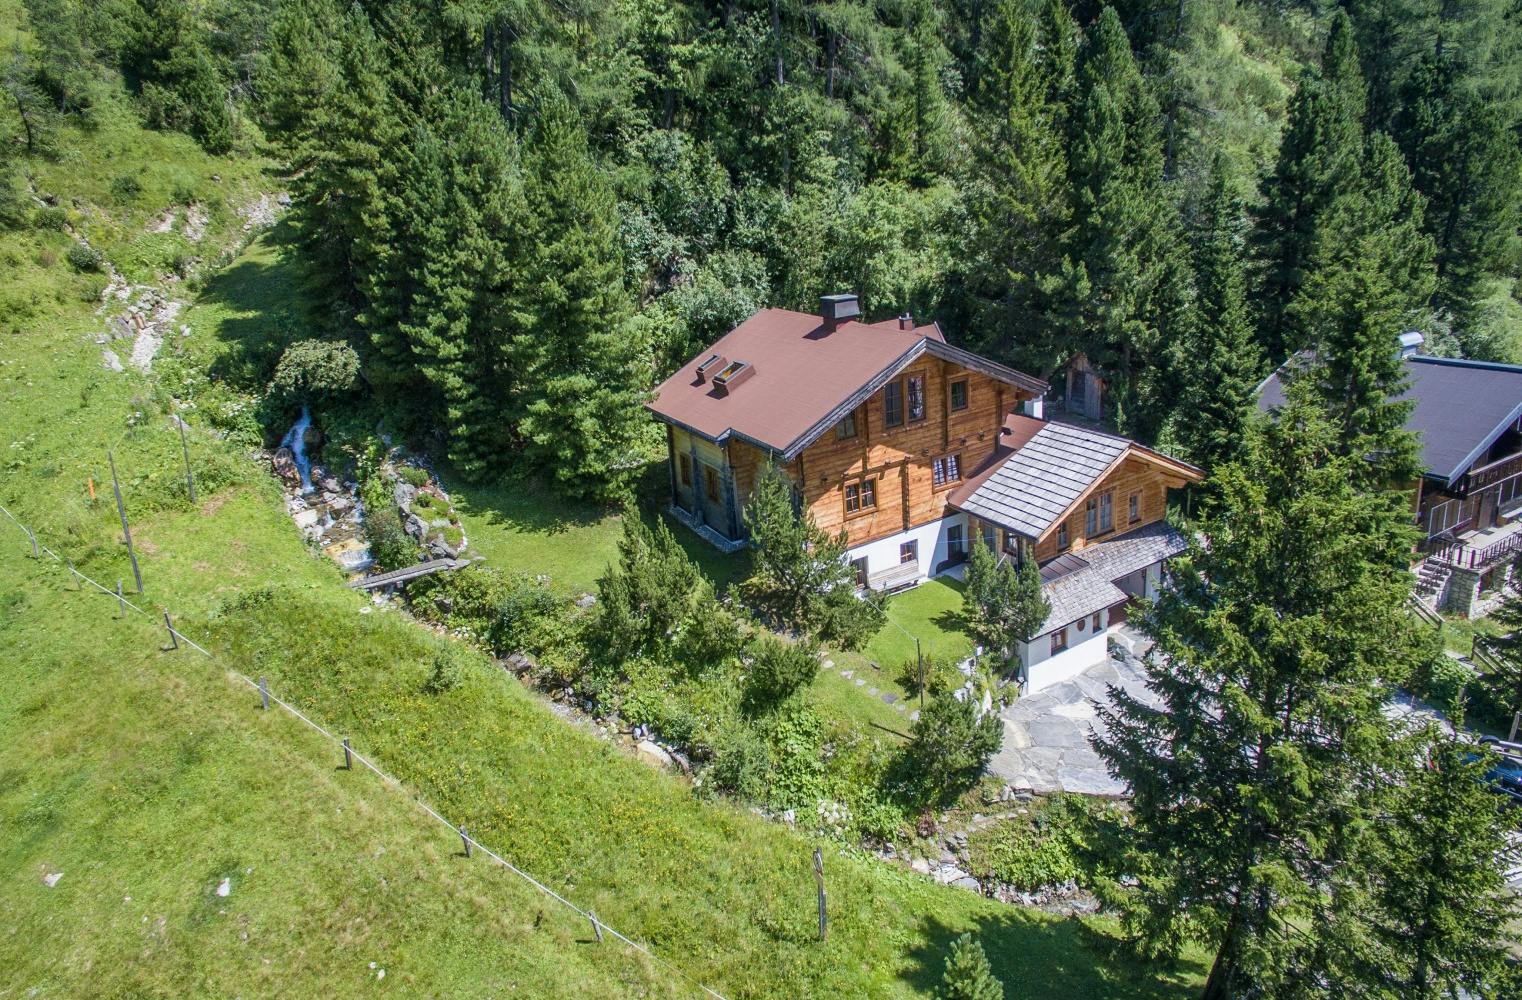 Sommer in Obertauern für 2 | Mountain Ranger Lodge | 1 Woche | inkl. Seilbahn 